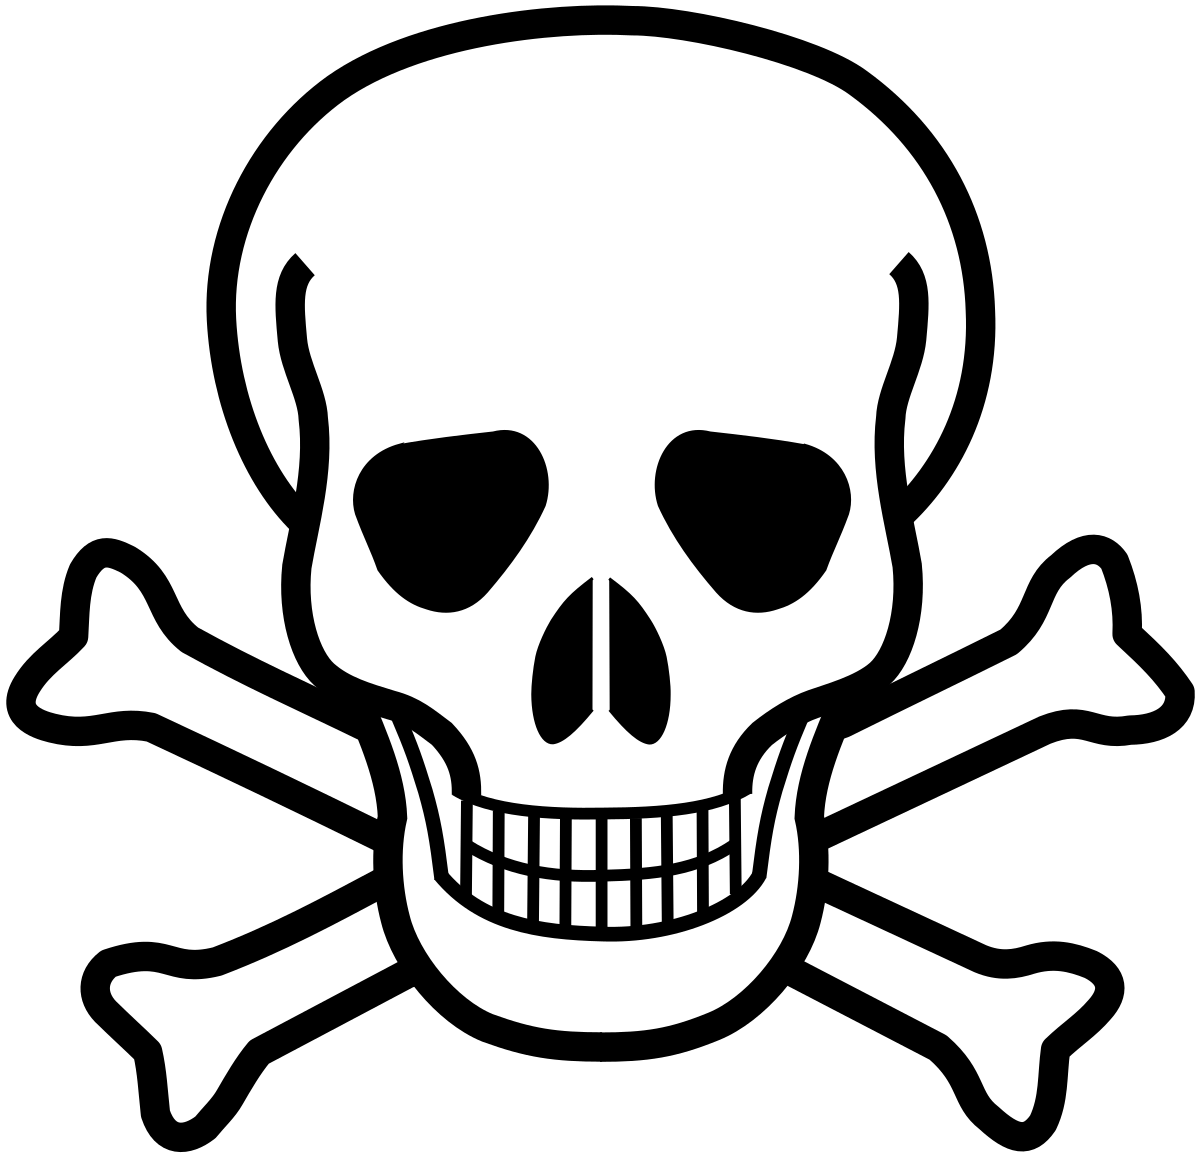 Piracy Logo - Skull and crossbones (symbol)